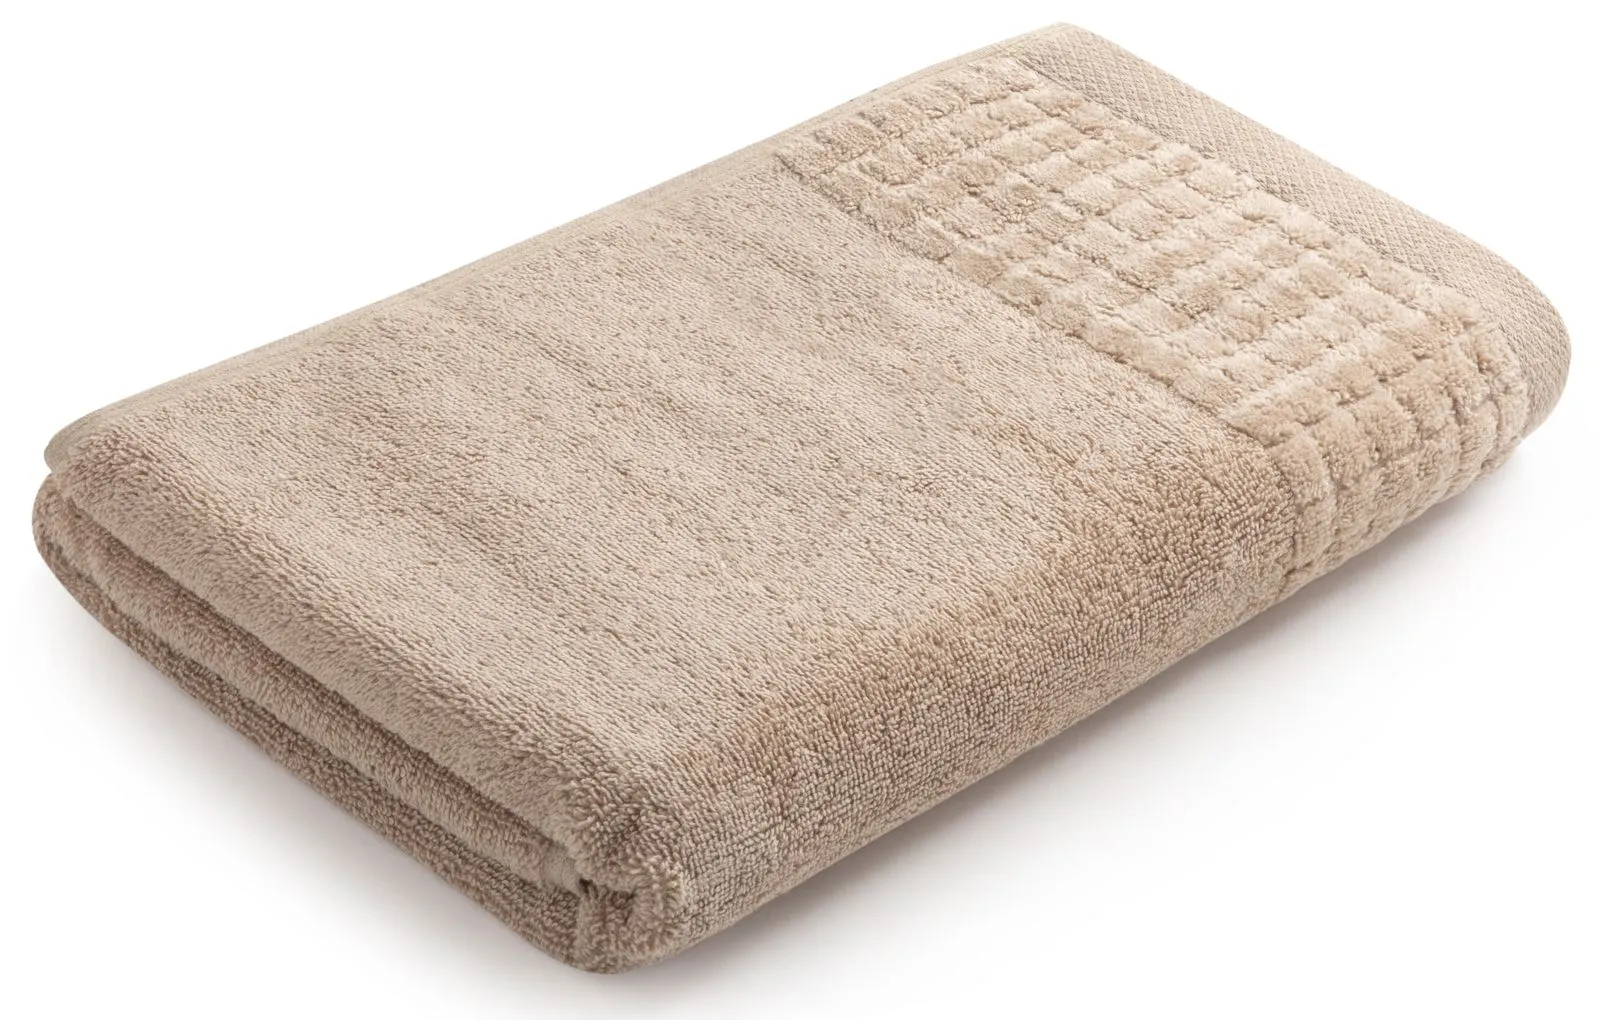 Gruby i miękki ręcznik kąpielowy 140×70 cm Larissa beżowy 500 g/m²